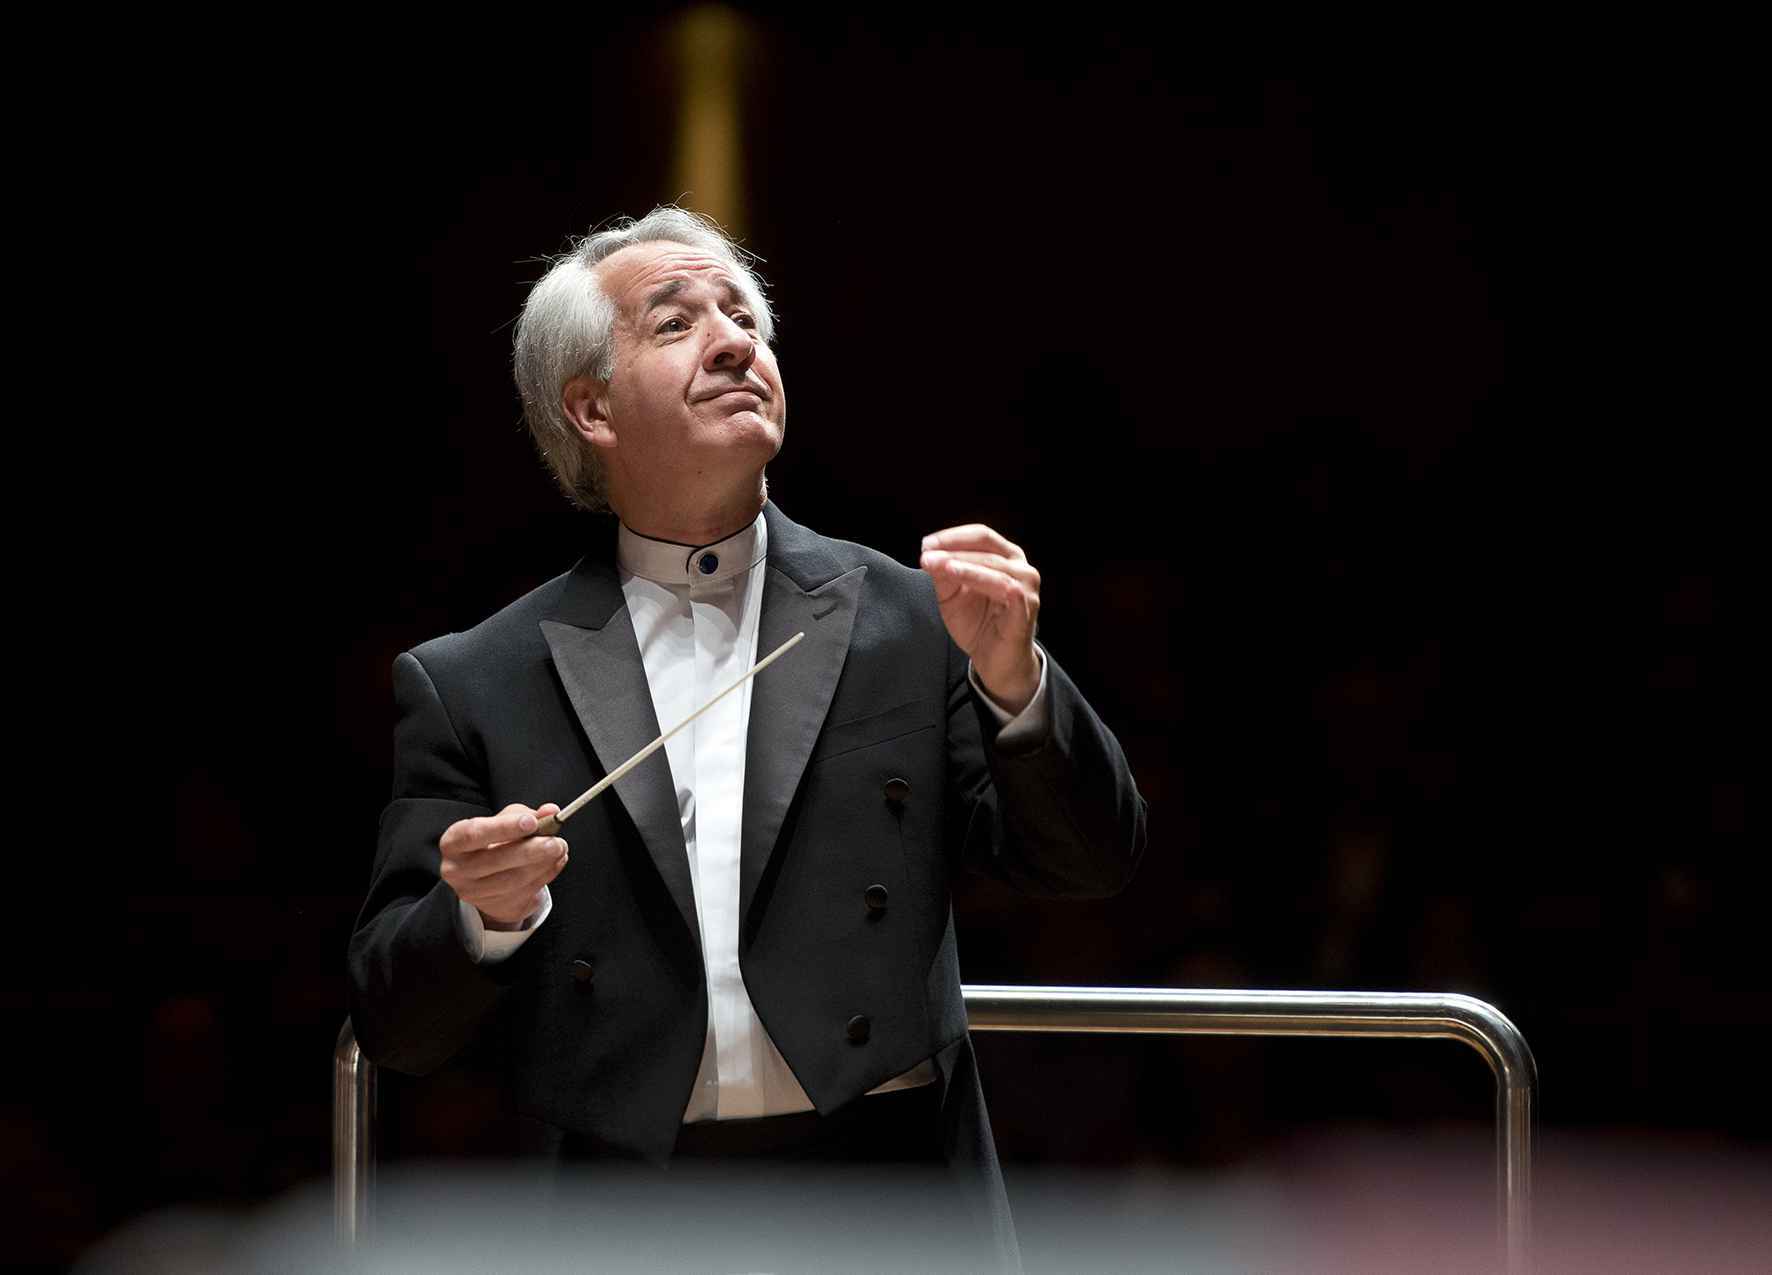 Concerto será regido pelo maestro Fabio Mechetti, diretor artístico e regente titular da Filarmônica